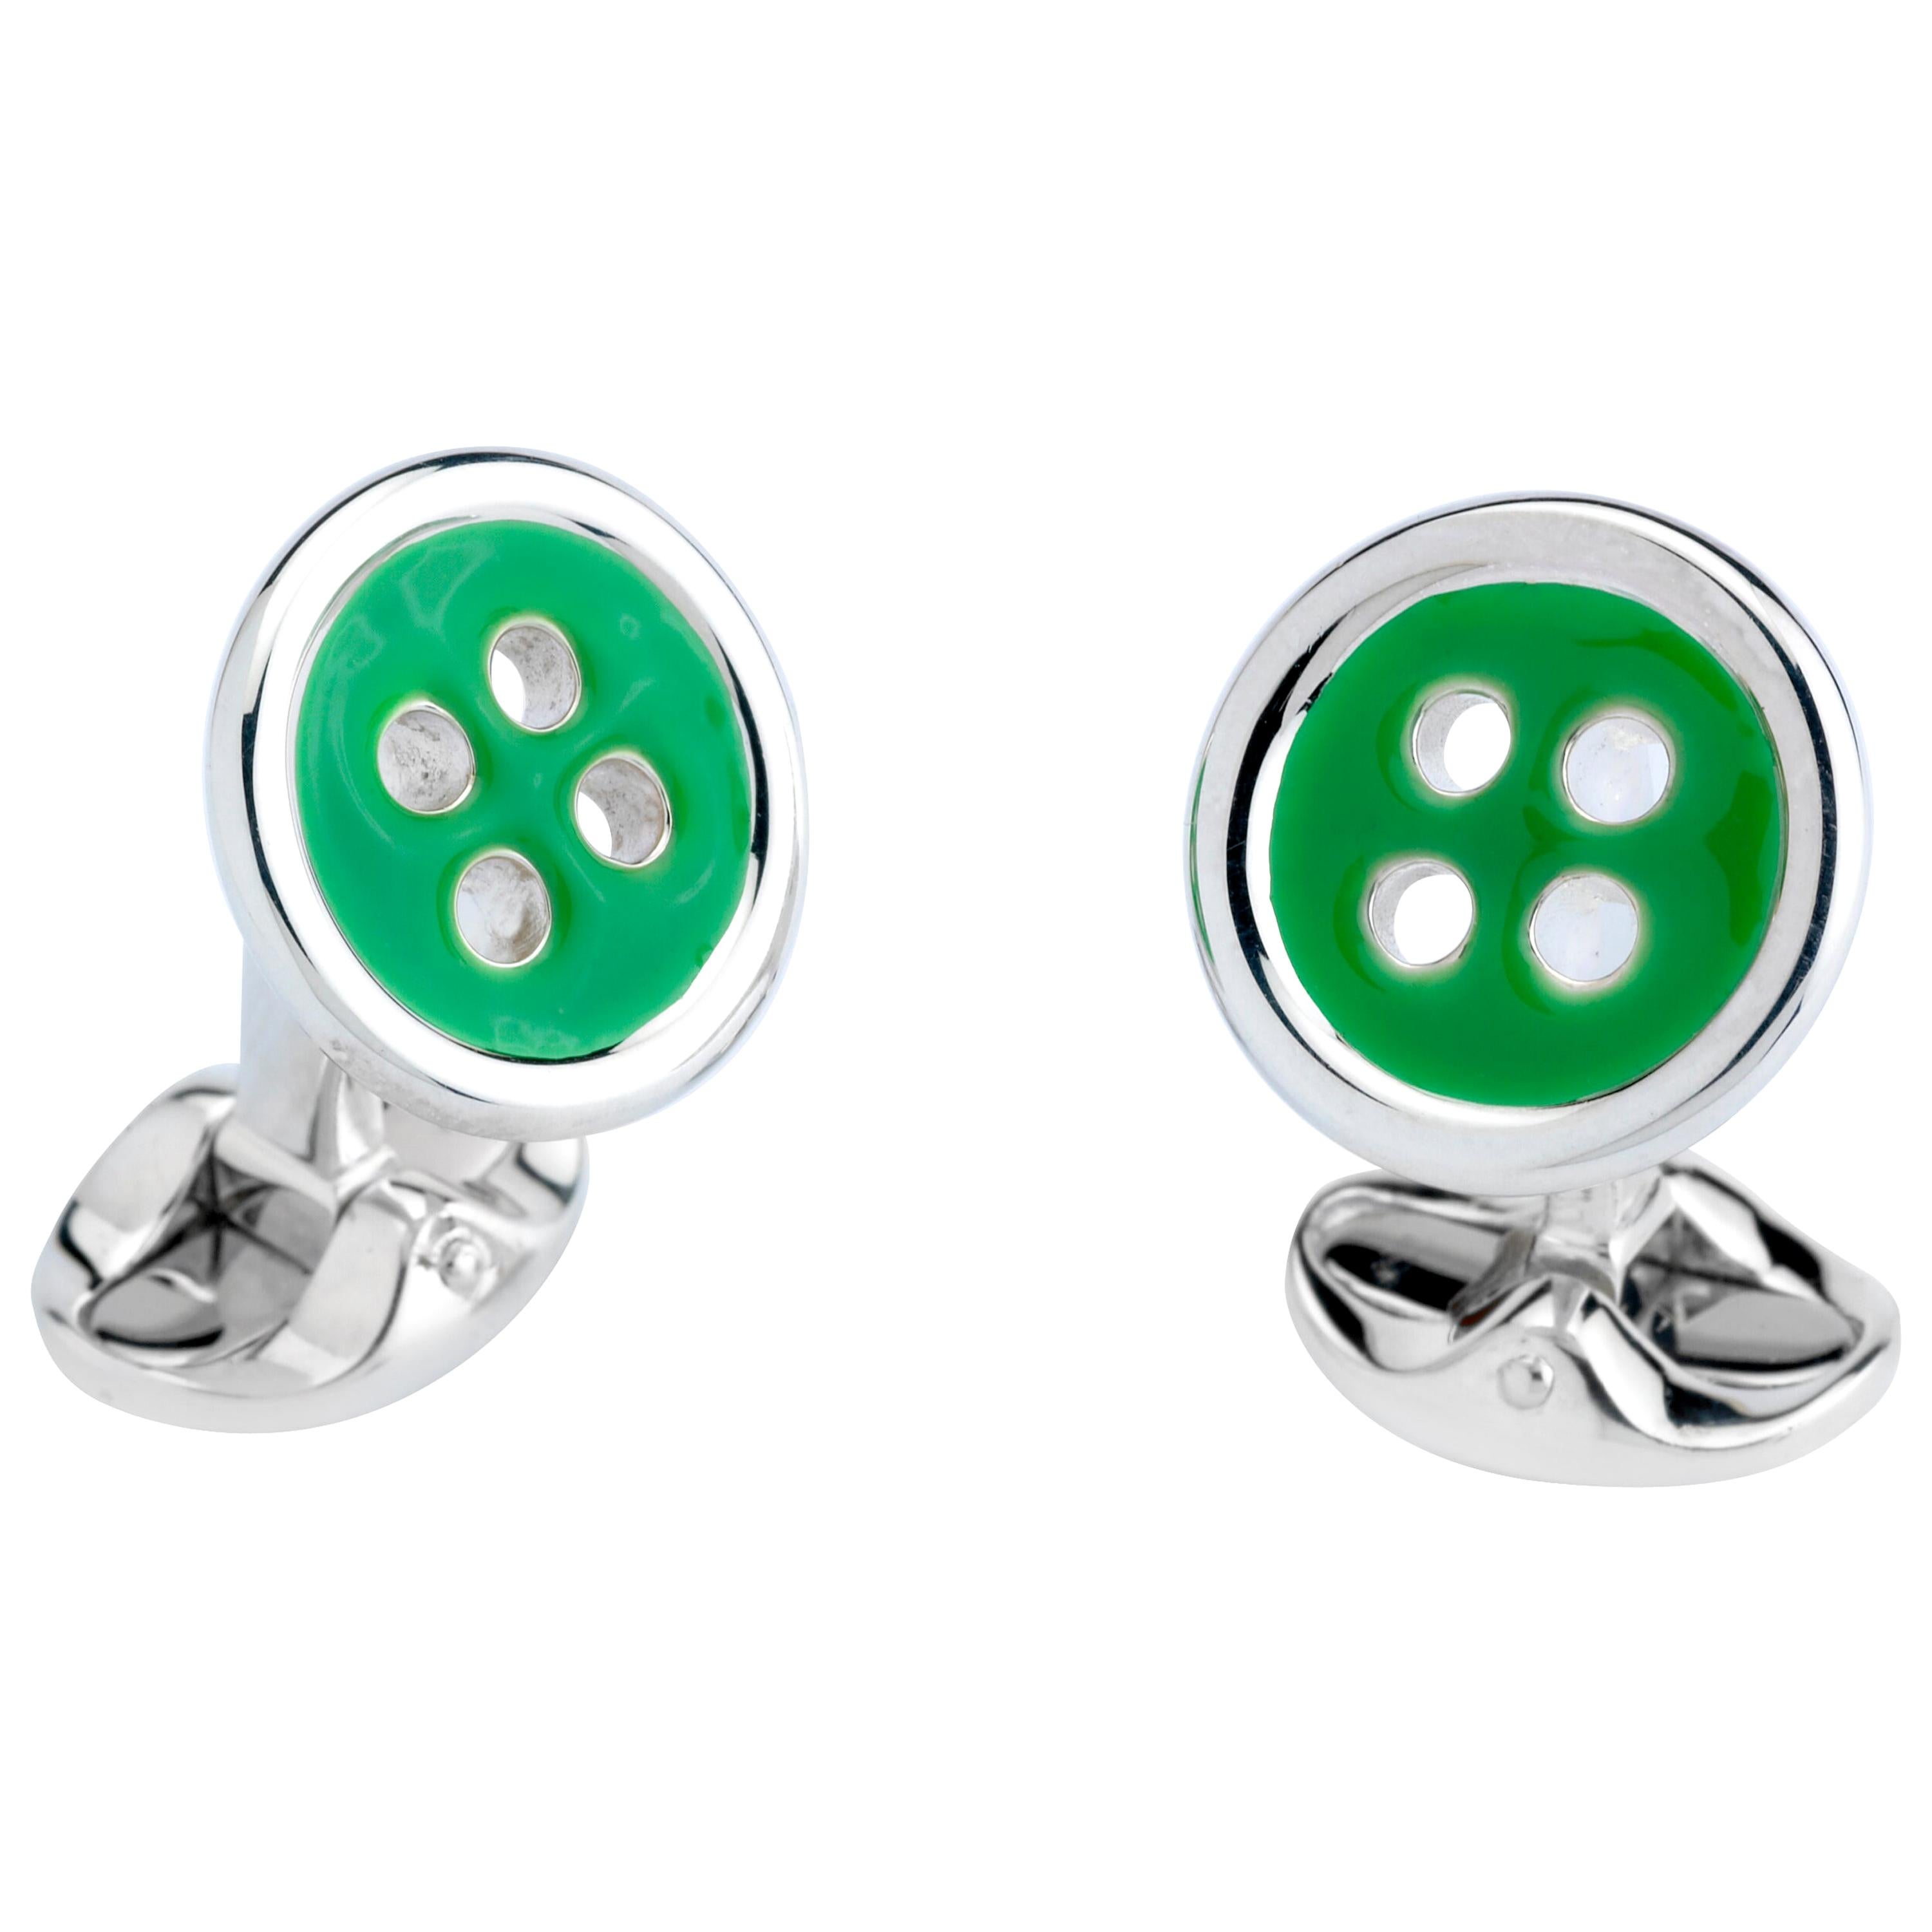 Deakin & Francis Sterling Silver Button Cufflinks with Green Enamel Detail